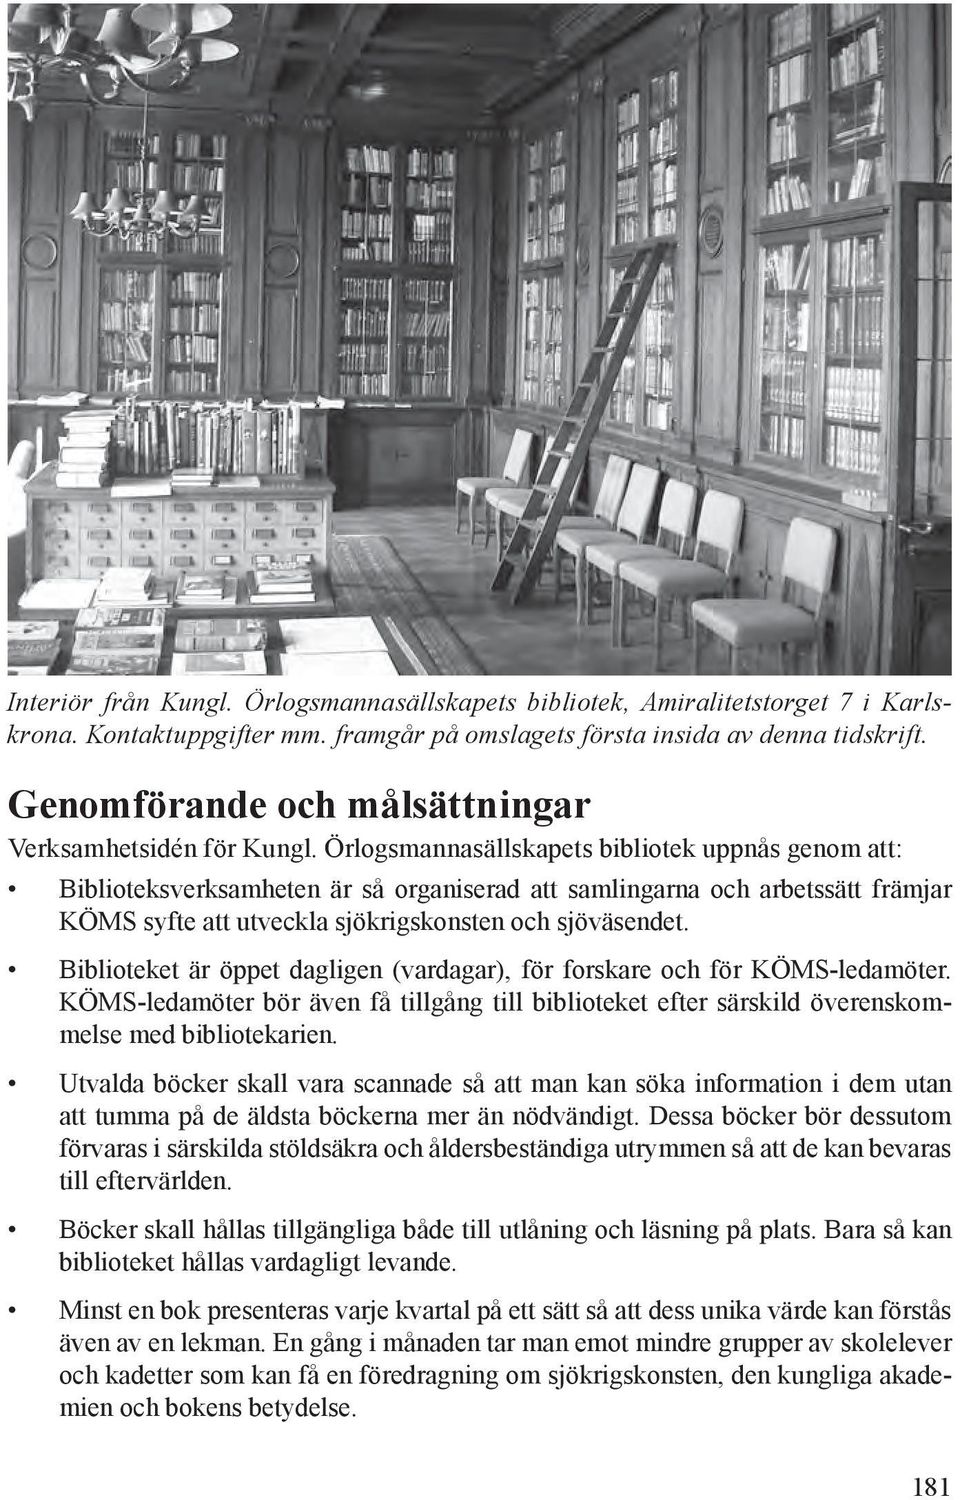 Örlogsmannasällskapets bibliotek uppnås genom att: Biblioteksverksamheten är så organiserad att samlingarna och arbetssätt främjar KÖMS syfte att utveckla sjökrigskonsten och sjöväsendet.